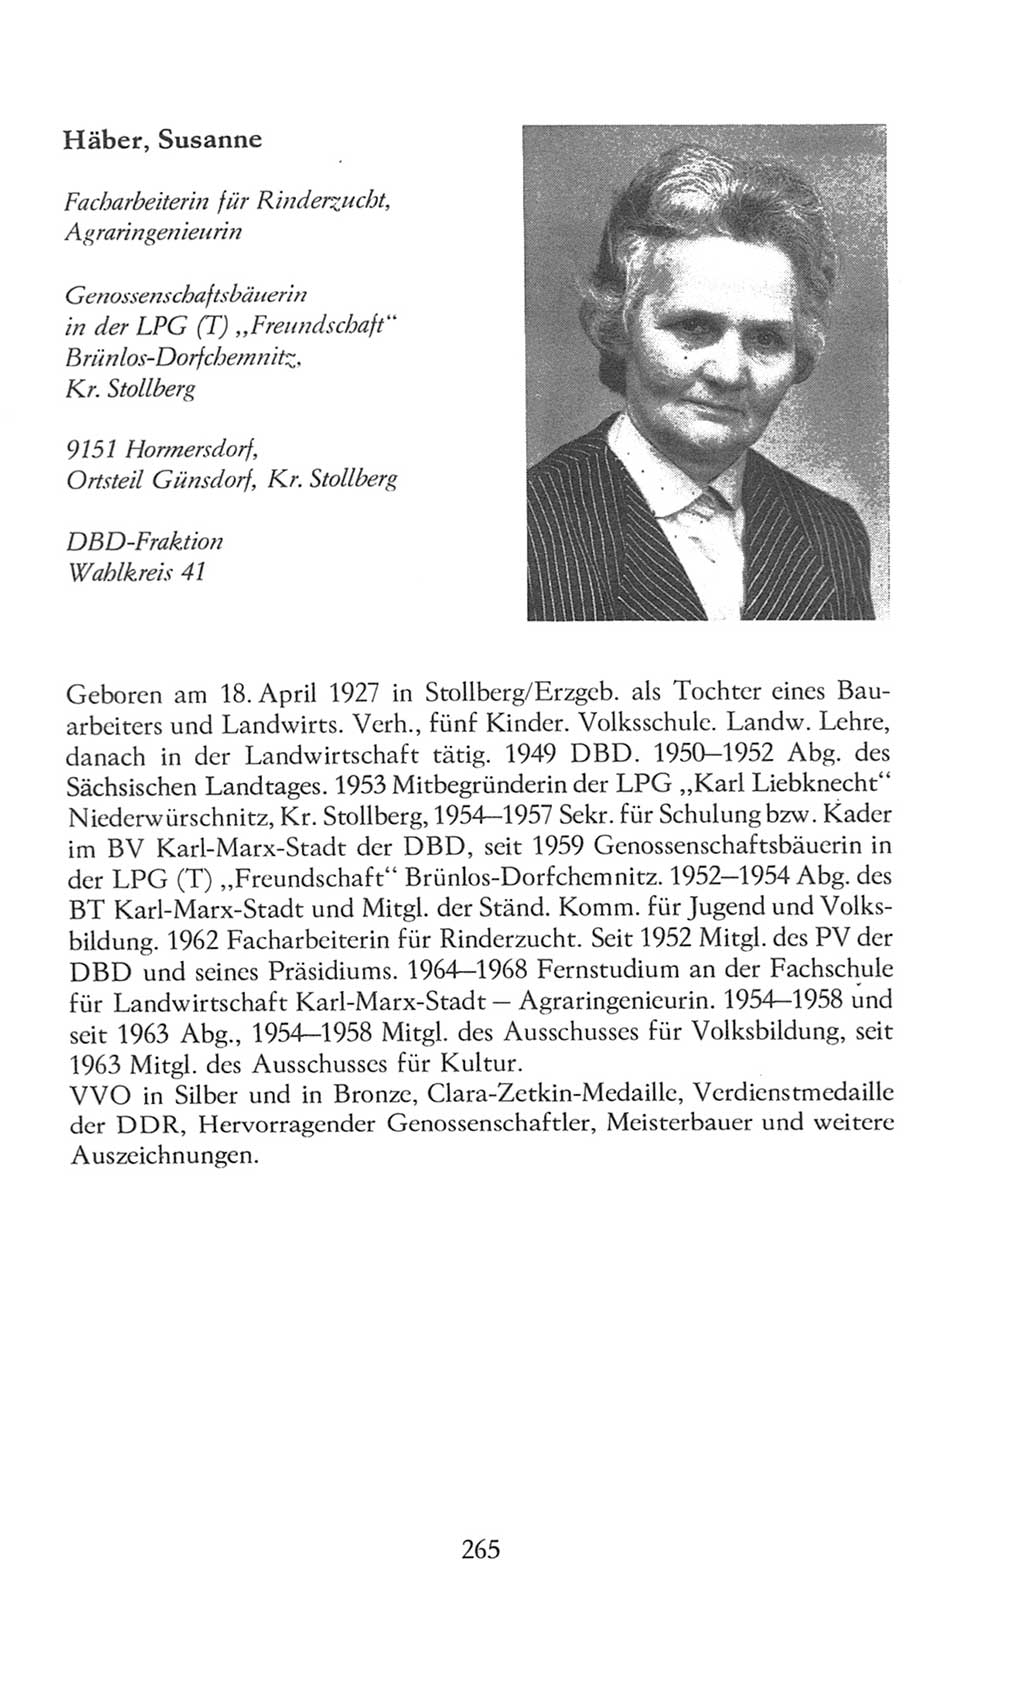 Volkskammer (VK) der Deutschen Demokratischen Republik (DDR), 8. Wahlperiode 1981-1986, Seite 265 (VK. DDR 8. WP. 1981-1986, S. 265)